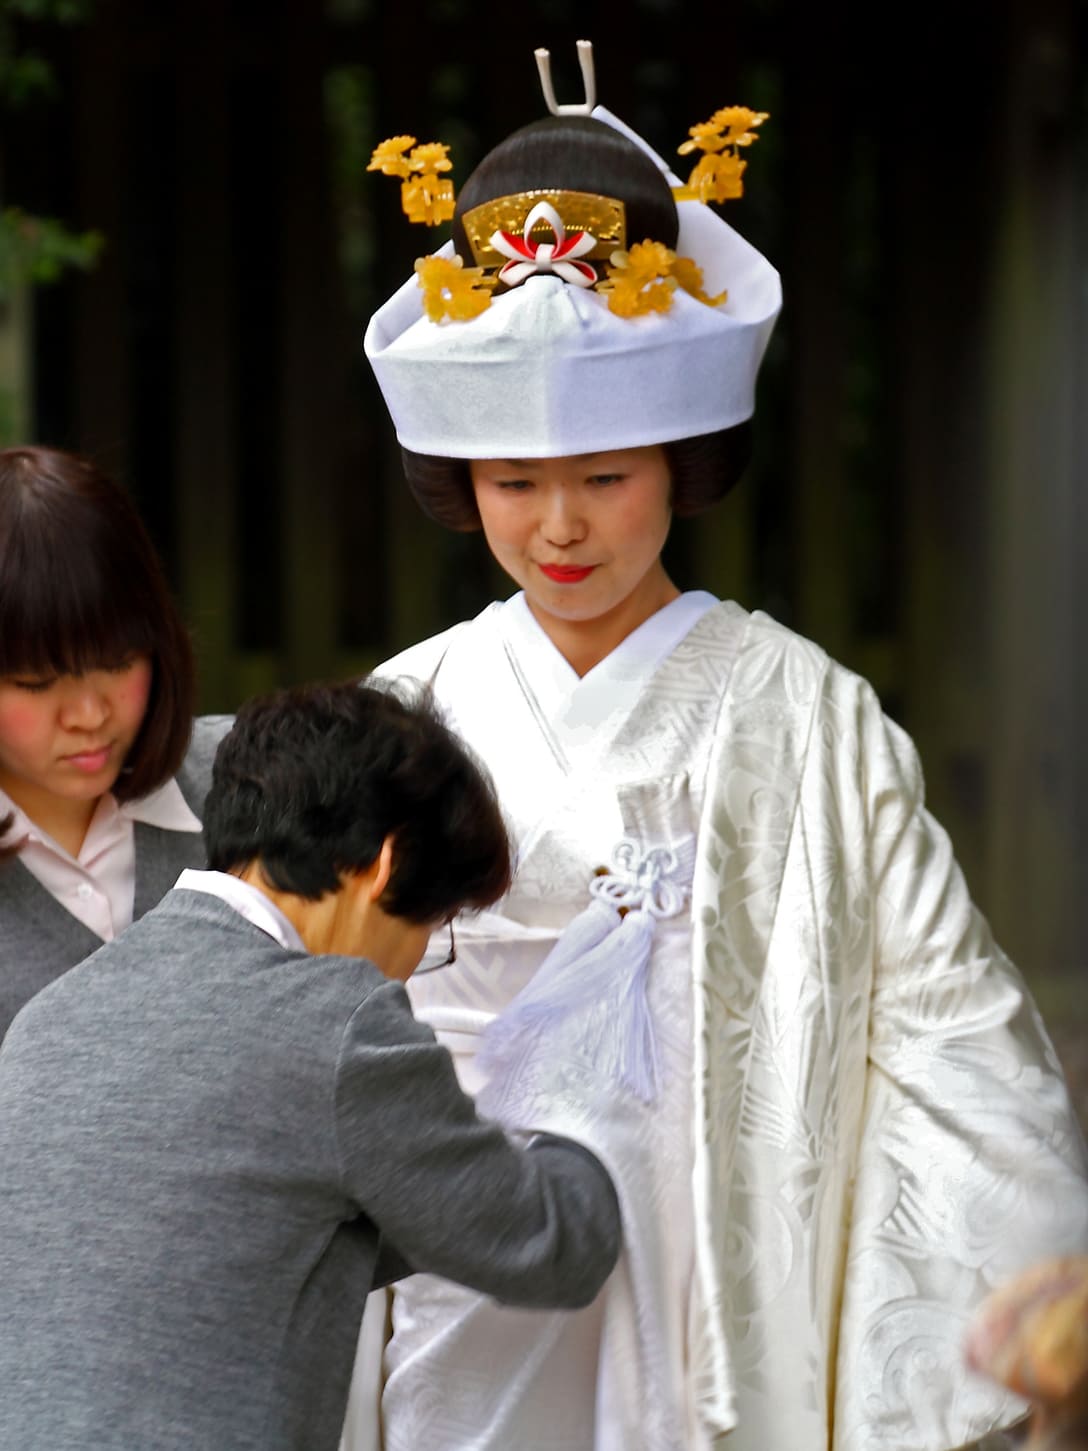 Tsunokakushi hat during wedding